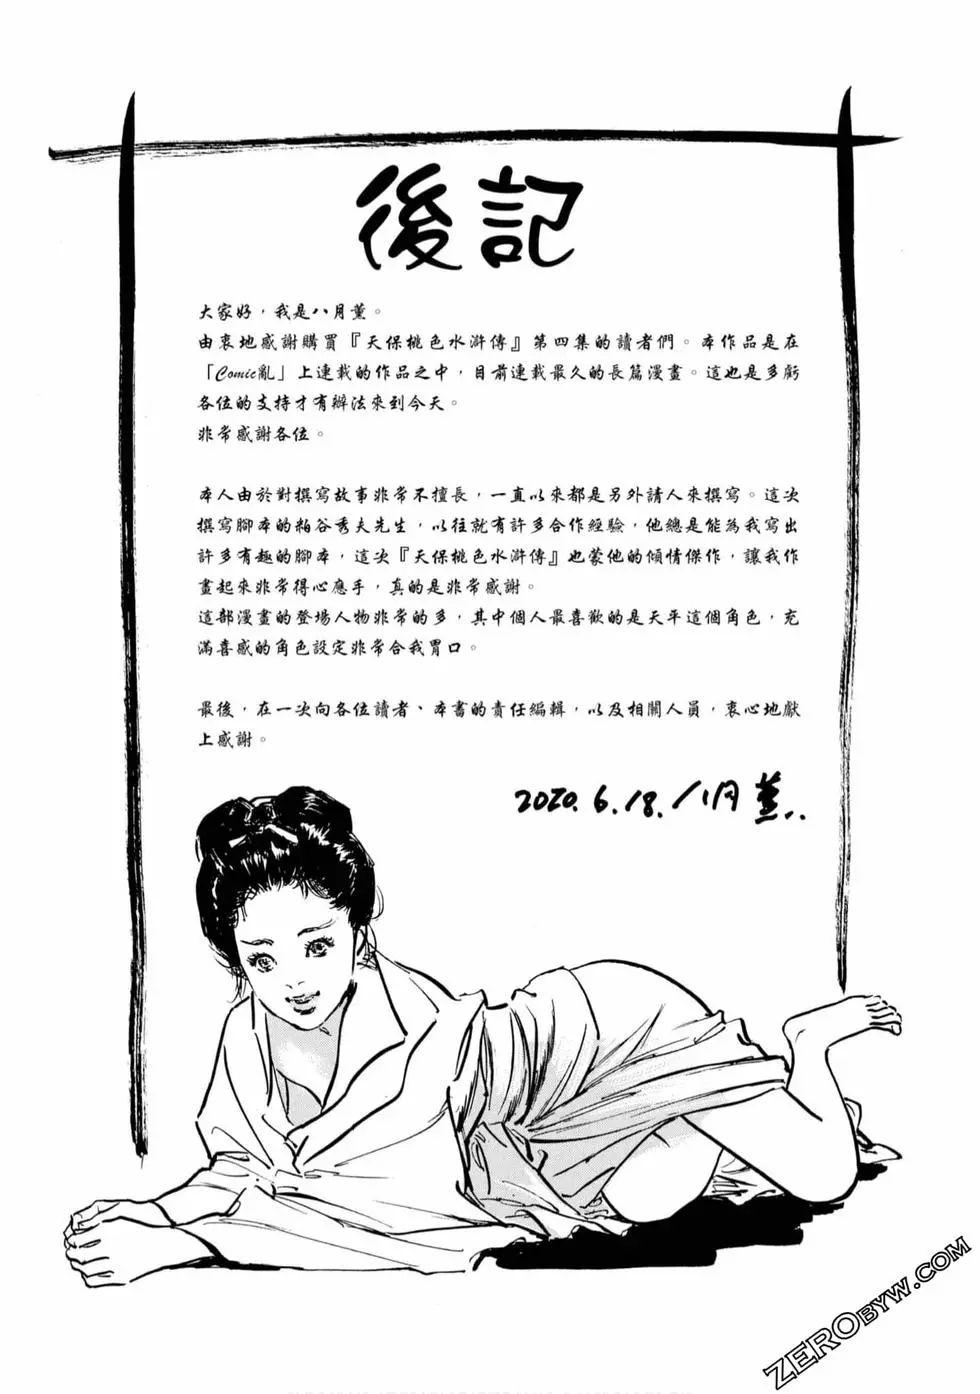 Publico Tenpou Momoiro Suikoden 4 Cream - Page 208